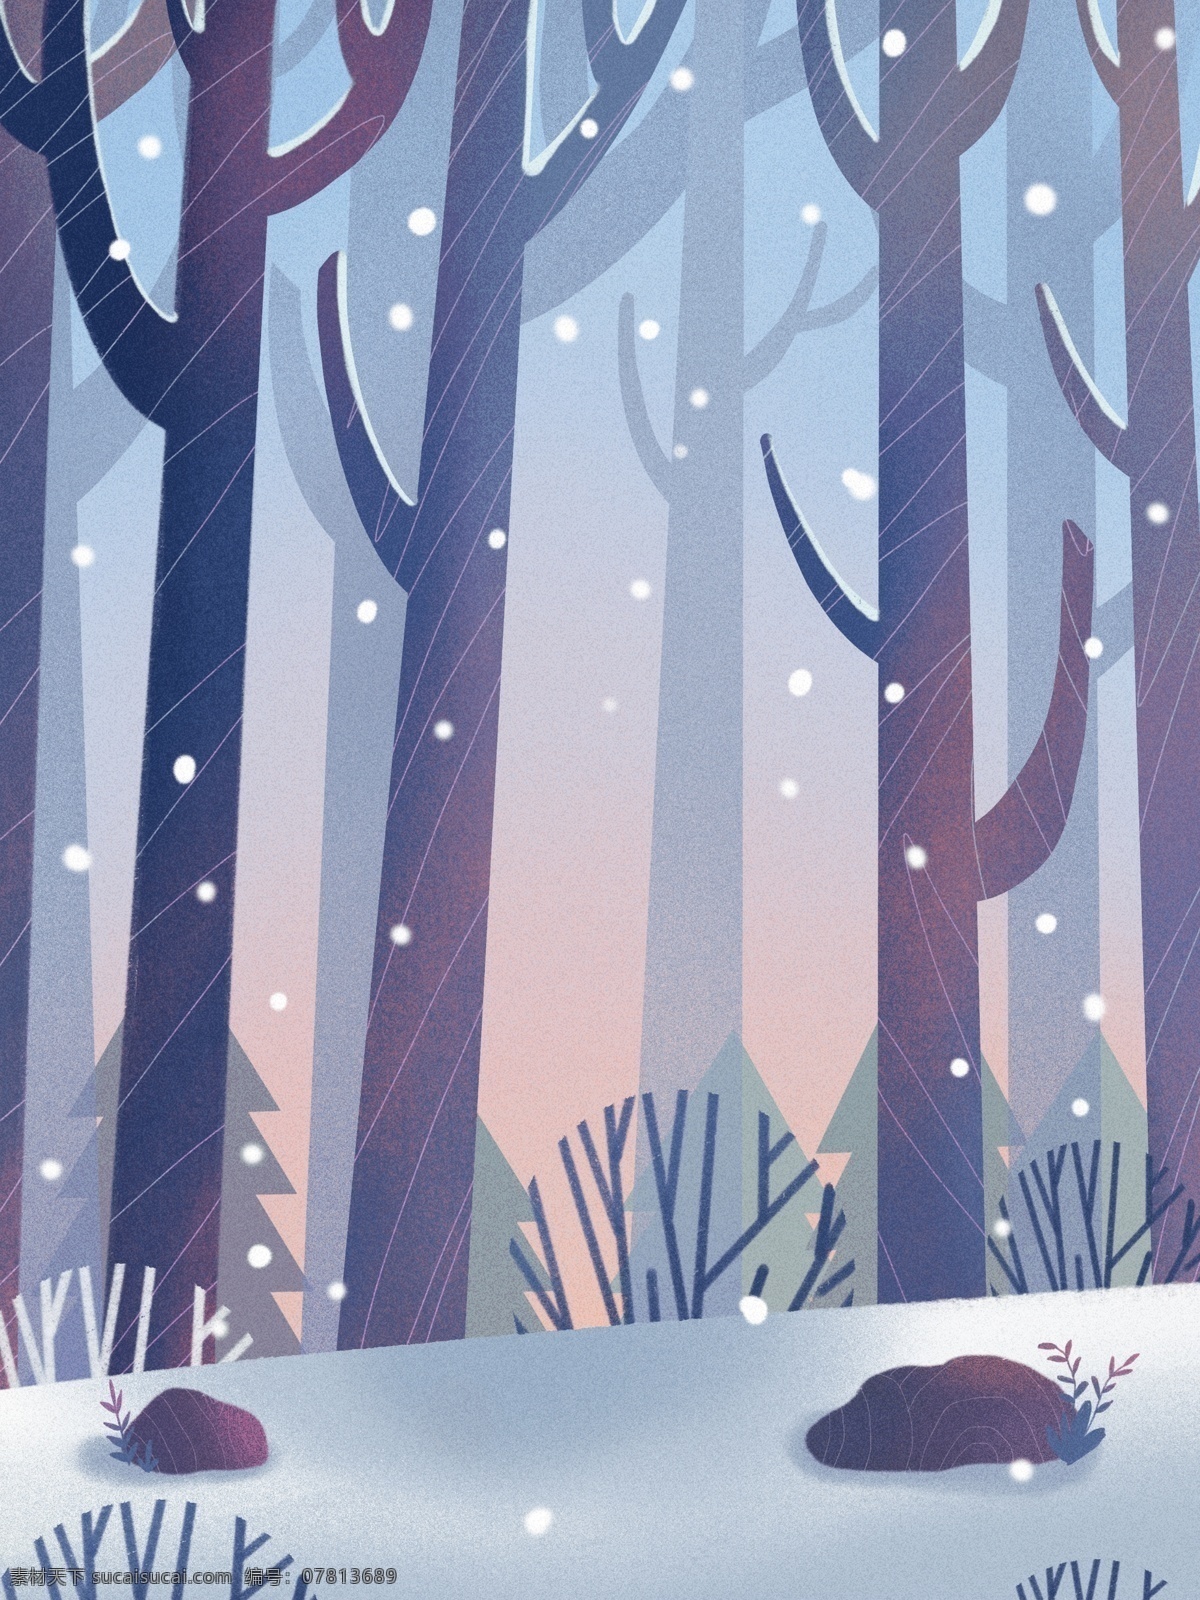 二十四节气 小雪 插画 背景 冬天 唯美 雪地 雪景 树木 背景设计 彩绘背景 大寒背景